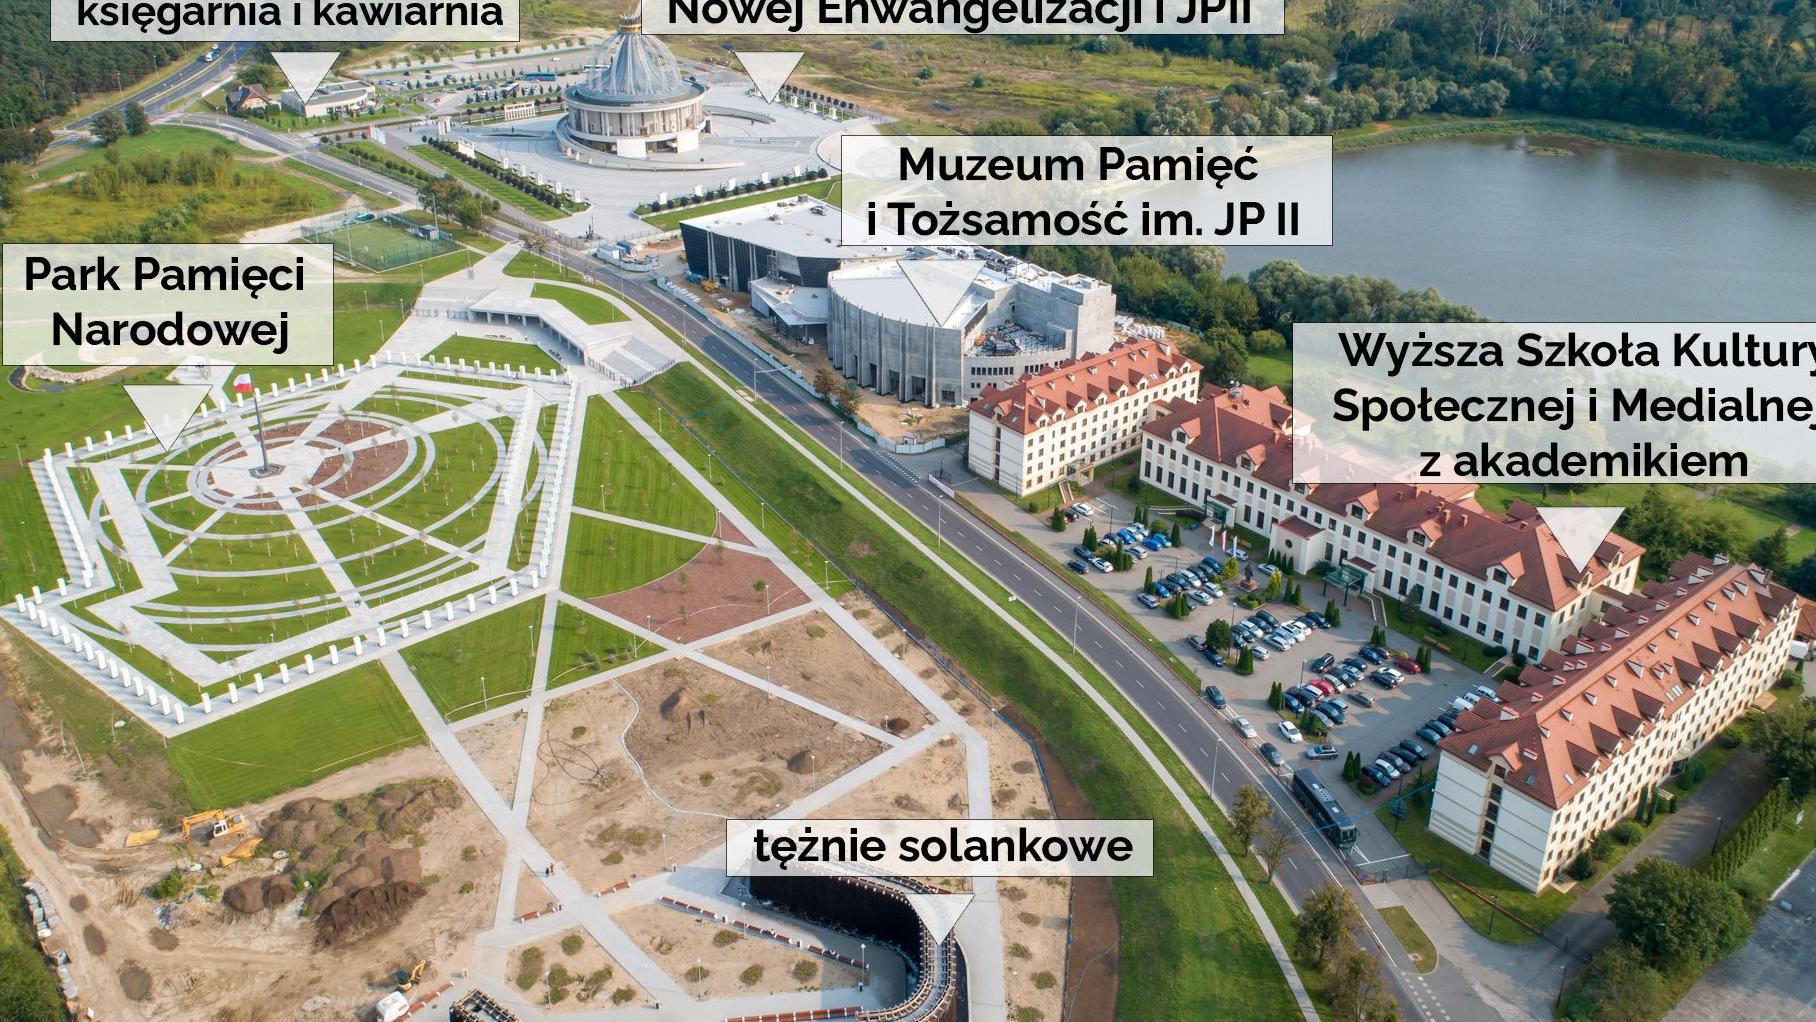 Centrum Polonia in Tertio Millennio